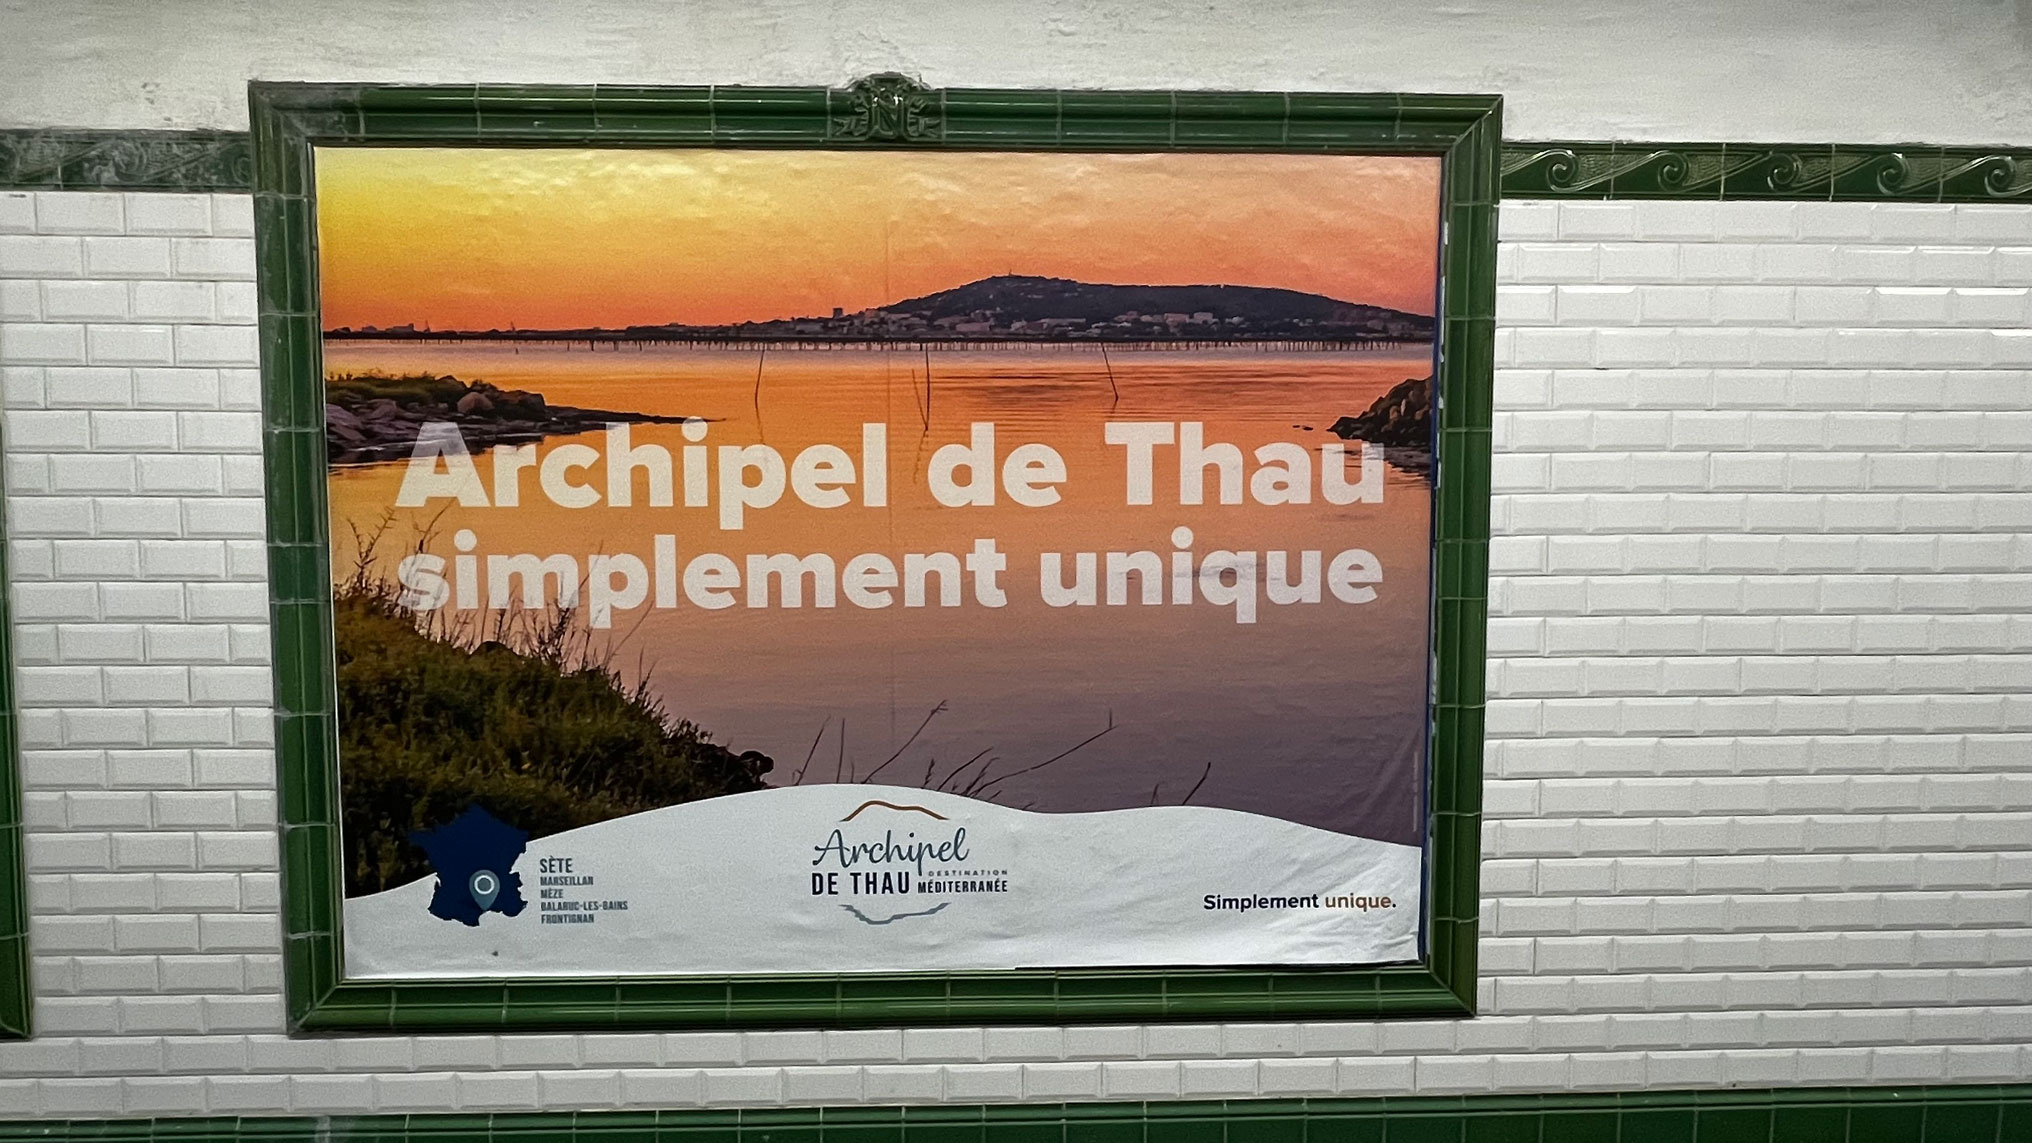 Publicité touristique dans le métro parisien pour l'Archipel de Thau